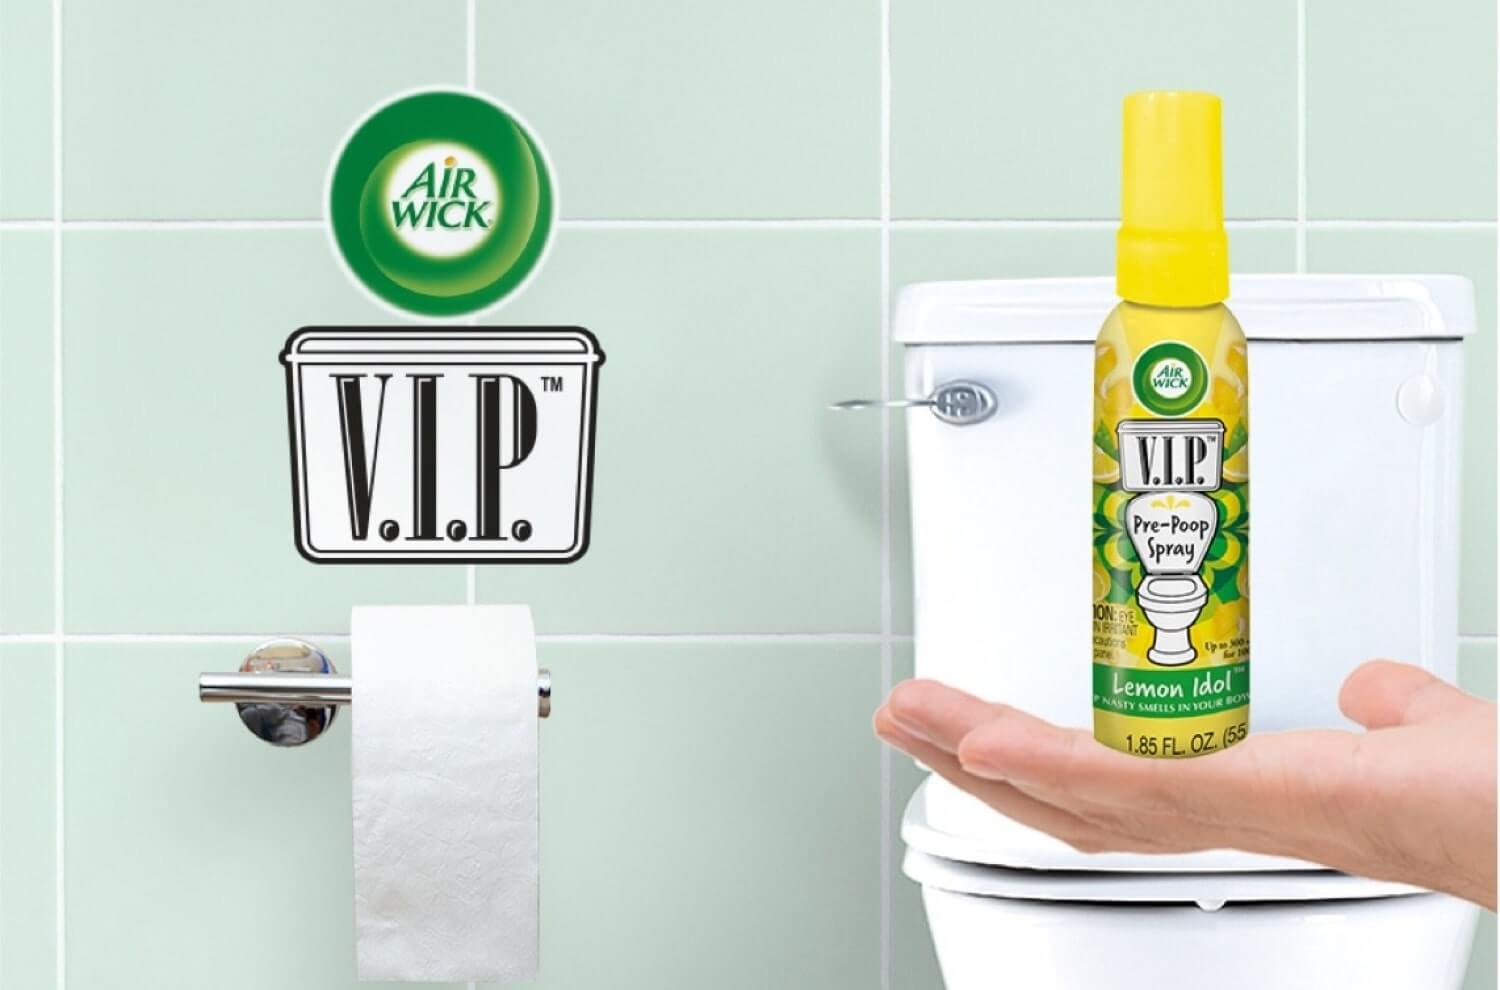 Air Wick V.I.P. Pre-Poop Toilet Spray, Hawaiian Hotshot